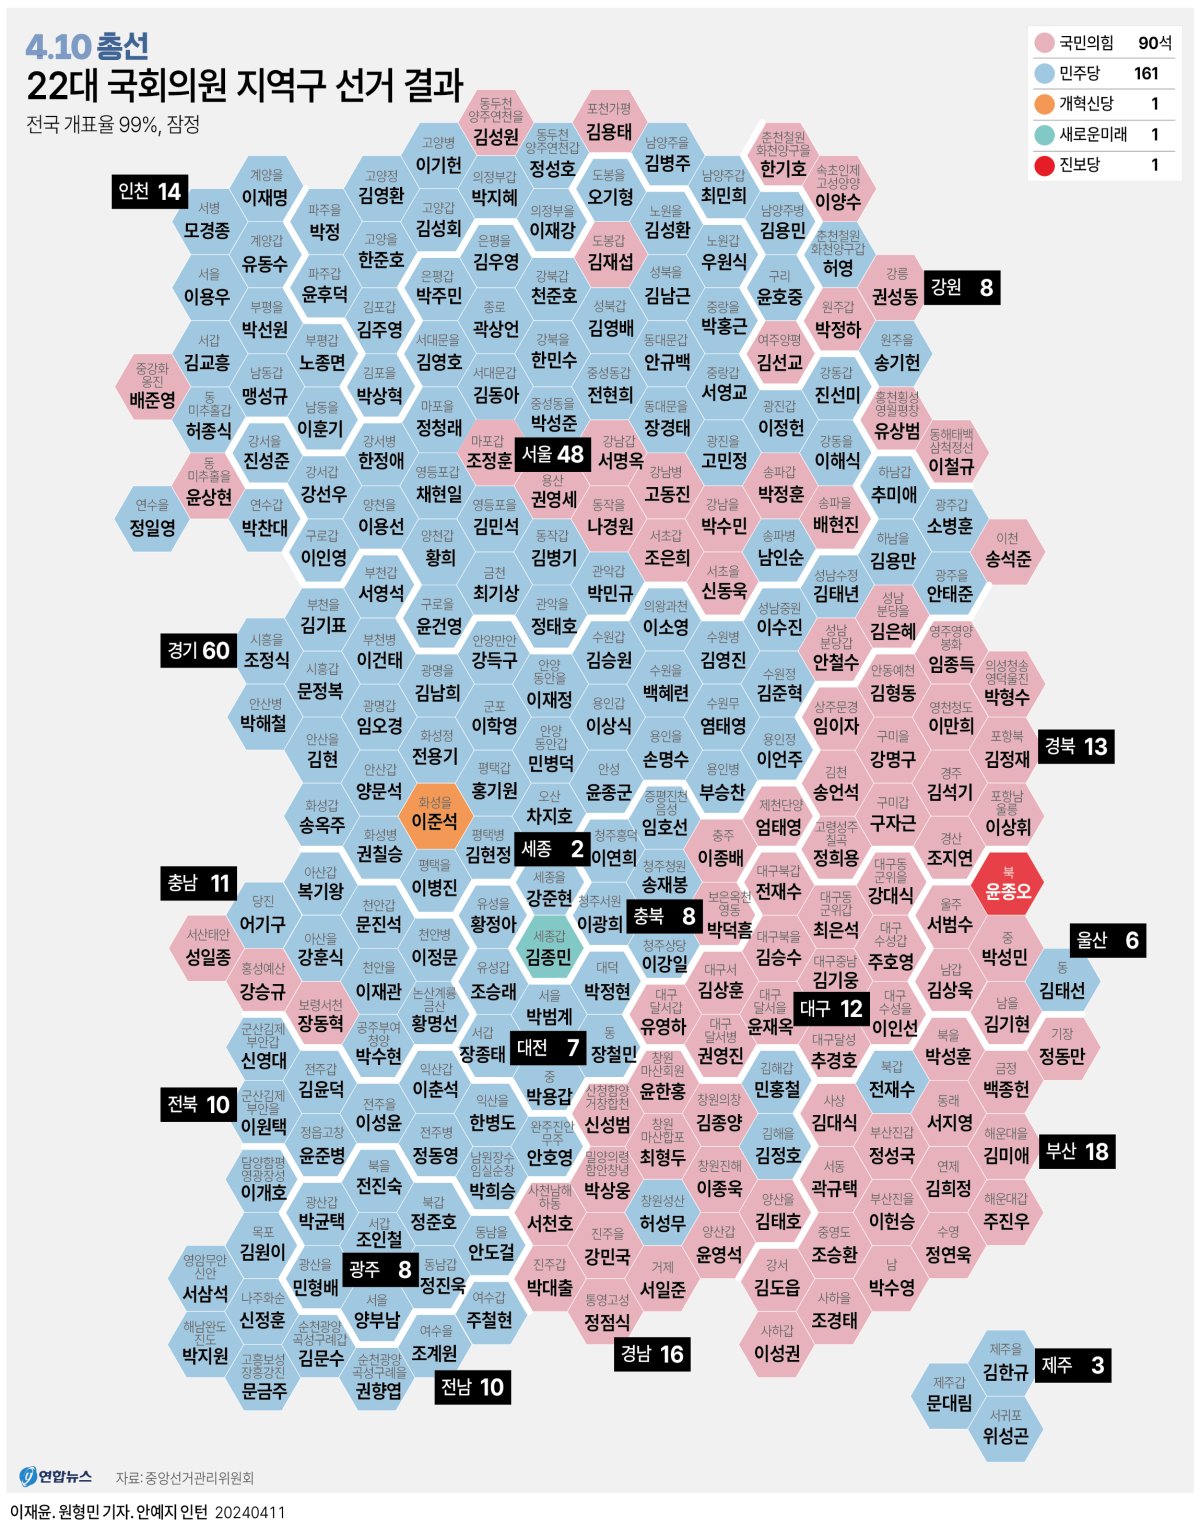 [그래픽] 22대 국회의원 지역구 선거 결과